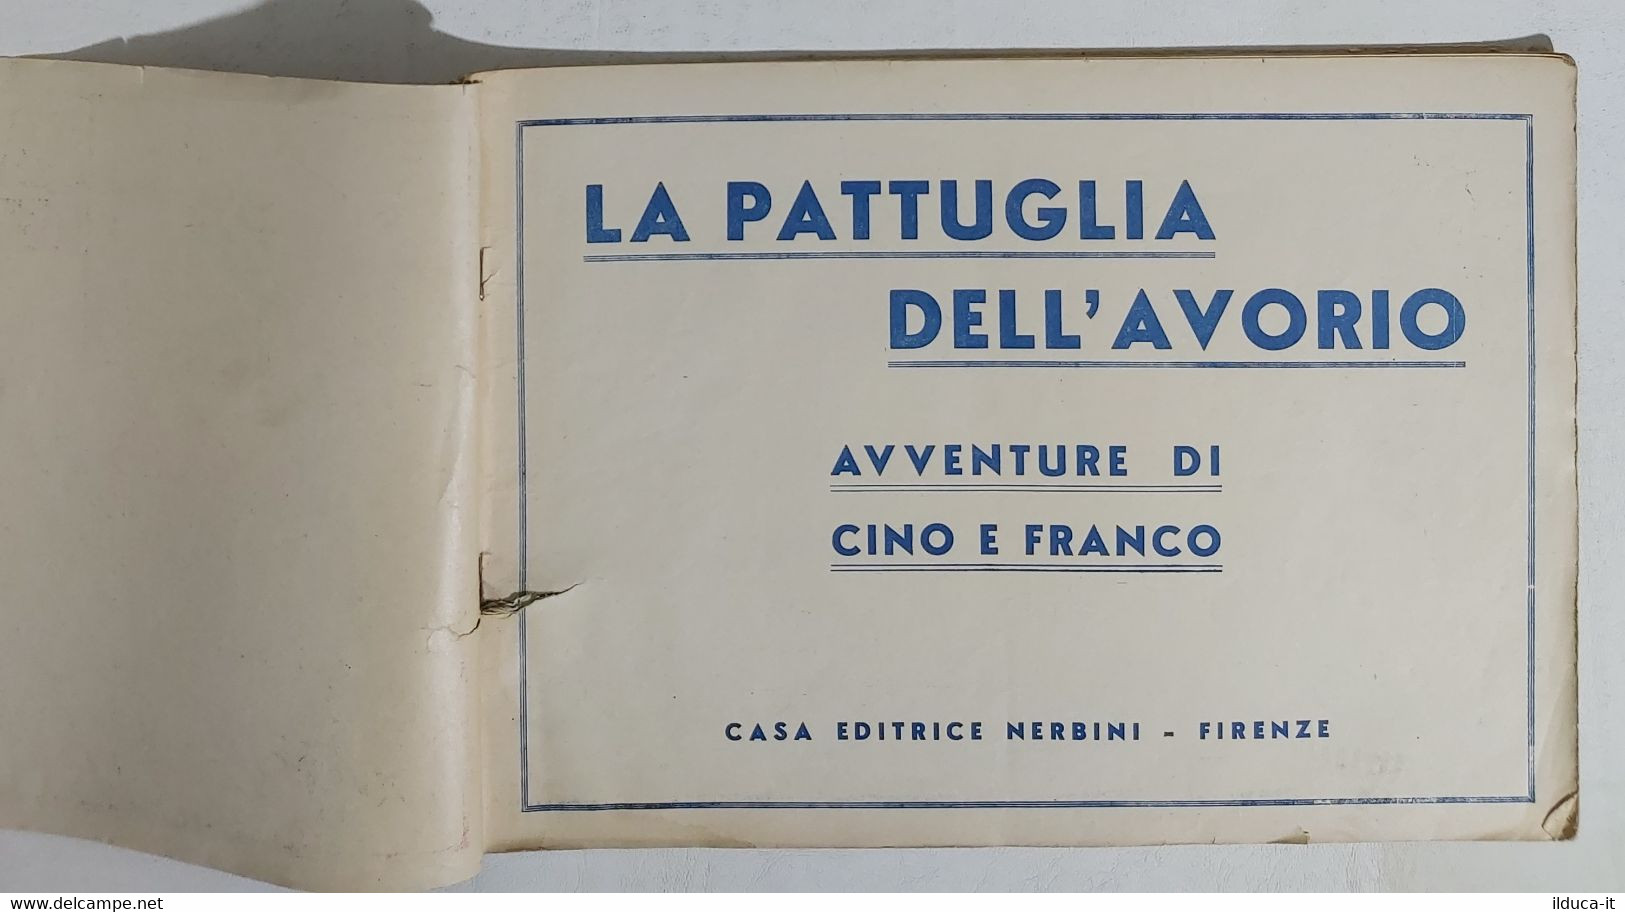 14688 Avventure Cino E Franco N. 3 - La Pattuglia Dell'avorio - 1935 - Classici 1930/50